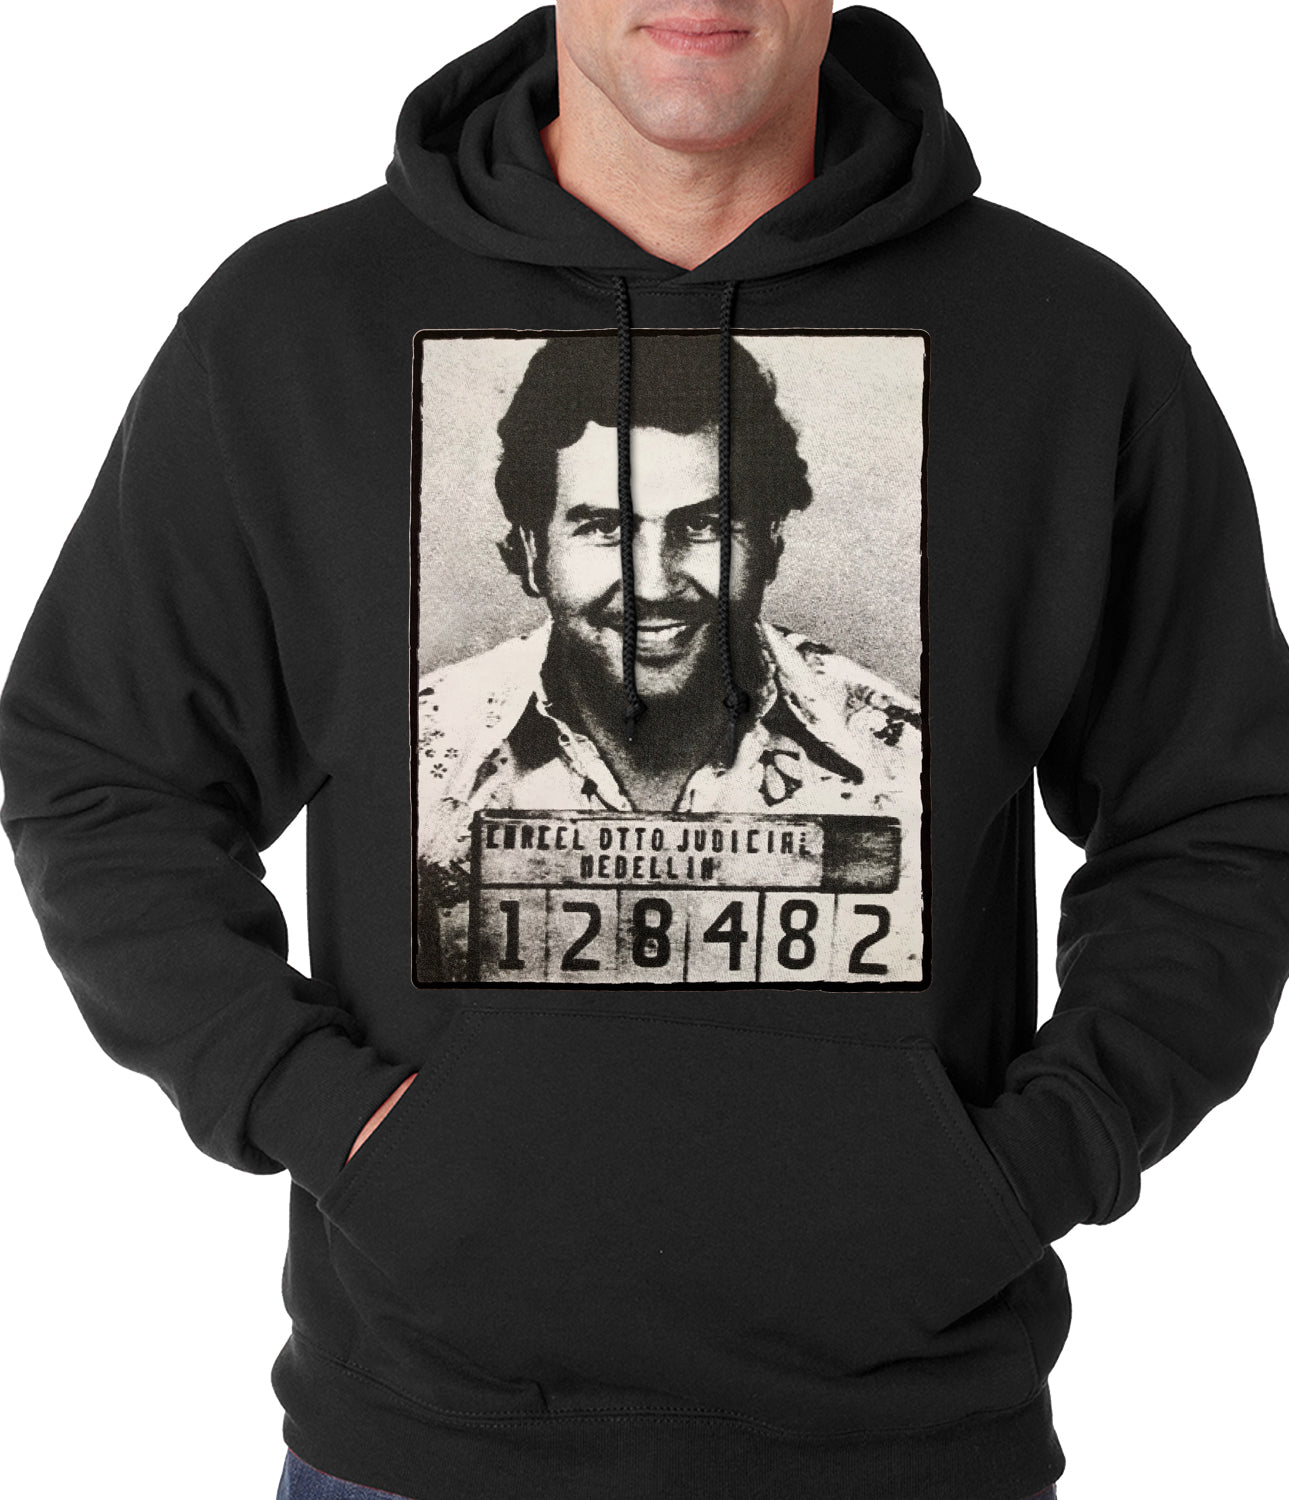 Pablo Escobar Smiling Mug Shot Adult Hoodie